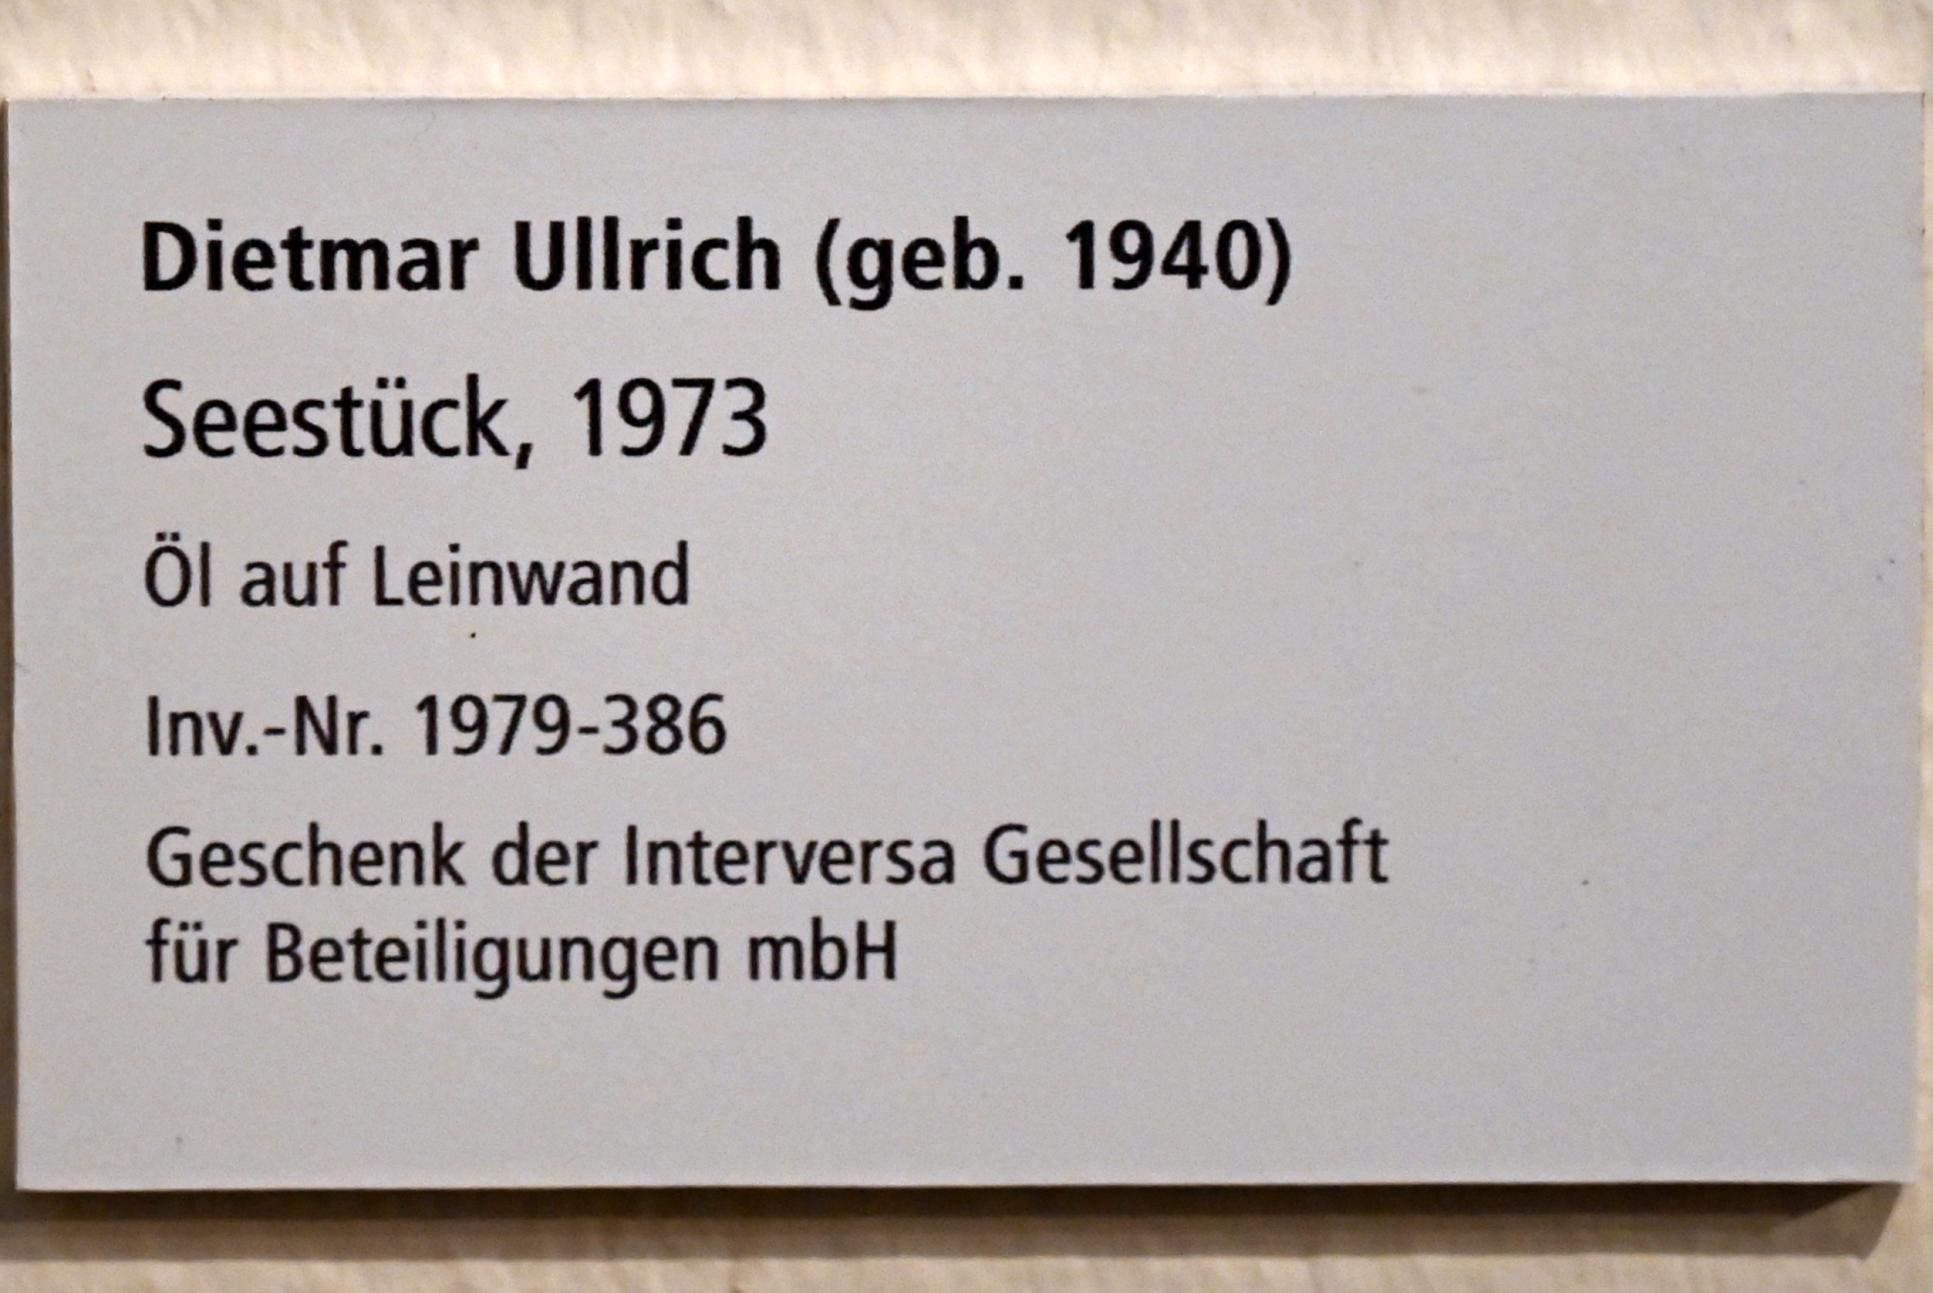 Dietmar Ullrich (1973), Seestück, Schleswig, Landesmuseum für Kunst und Kulturgeschichte, Galerie der Klassischen Moderne, 1973, Bild 2/2